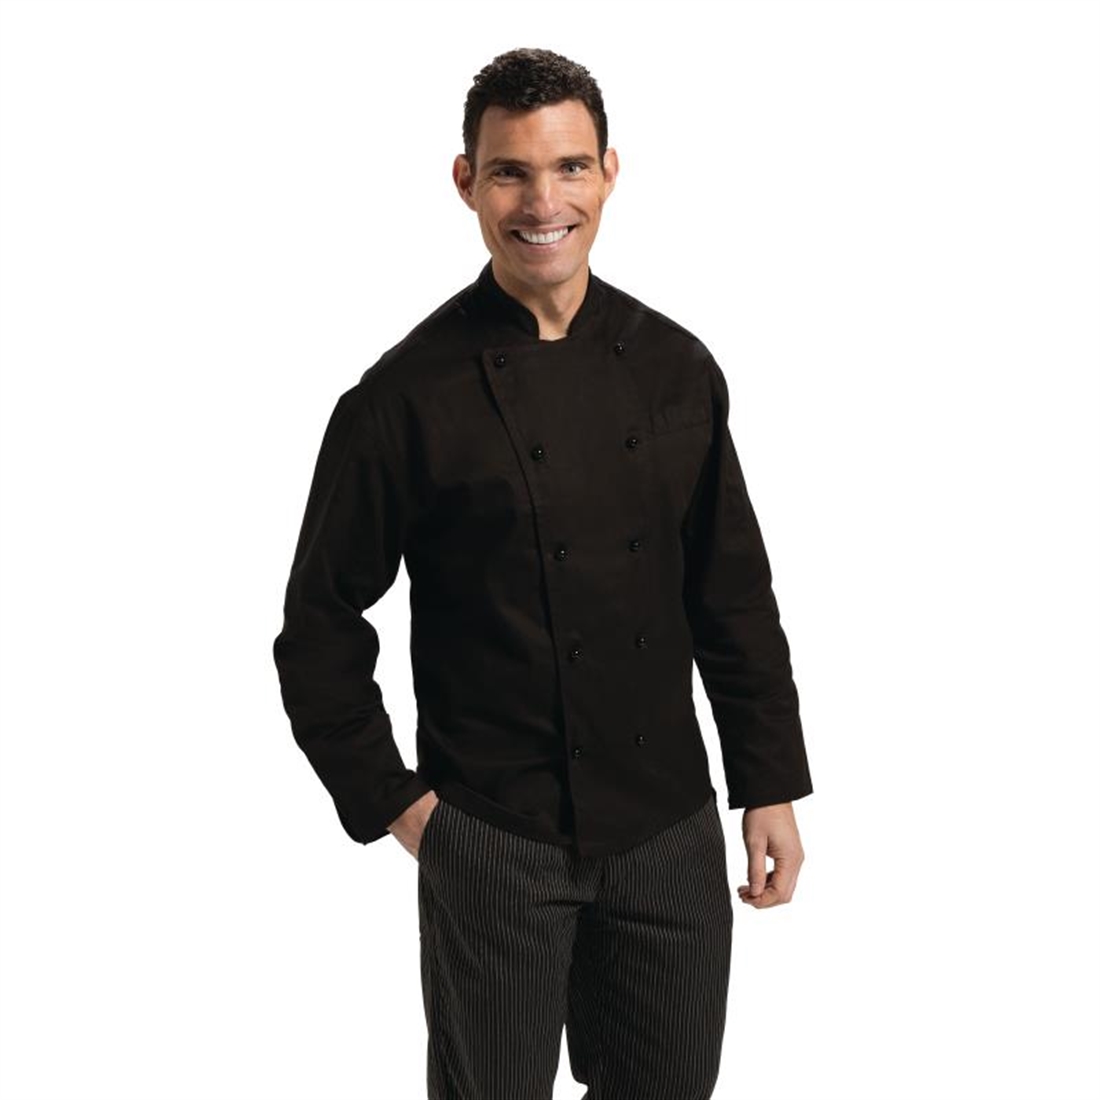 Whites Vegas Chef Jacket Short Sleeve Black - S